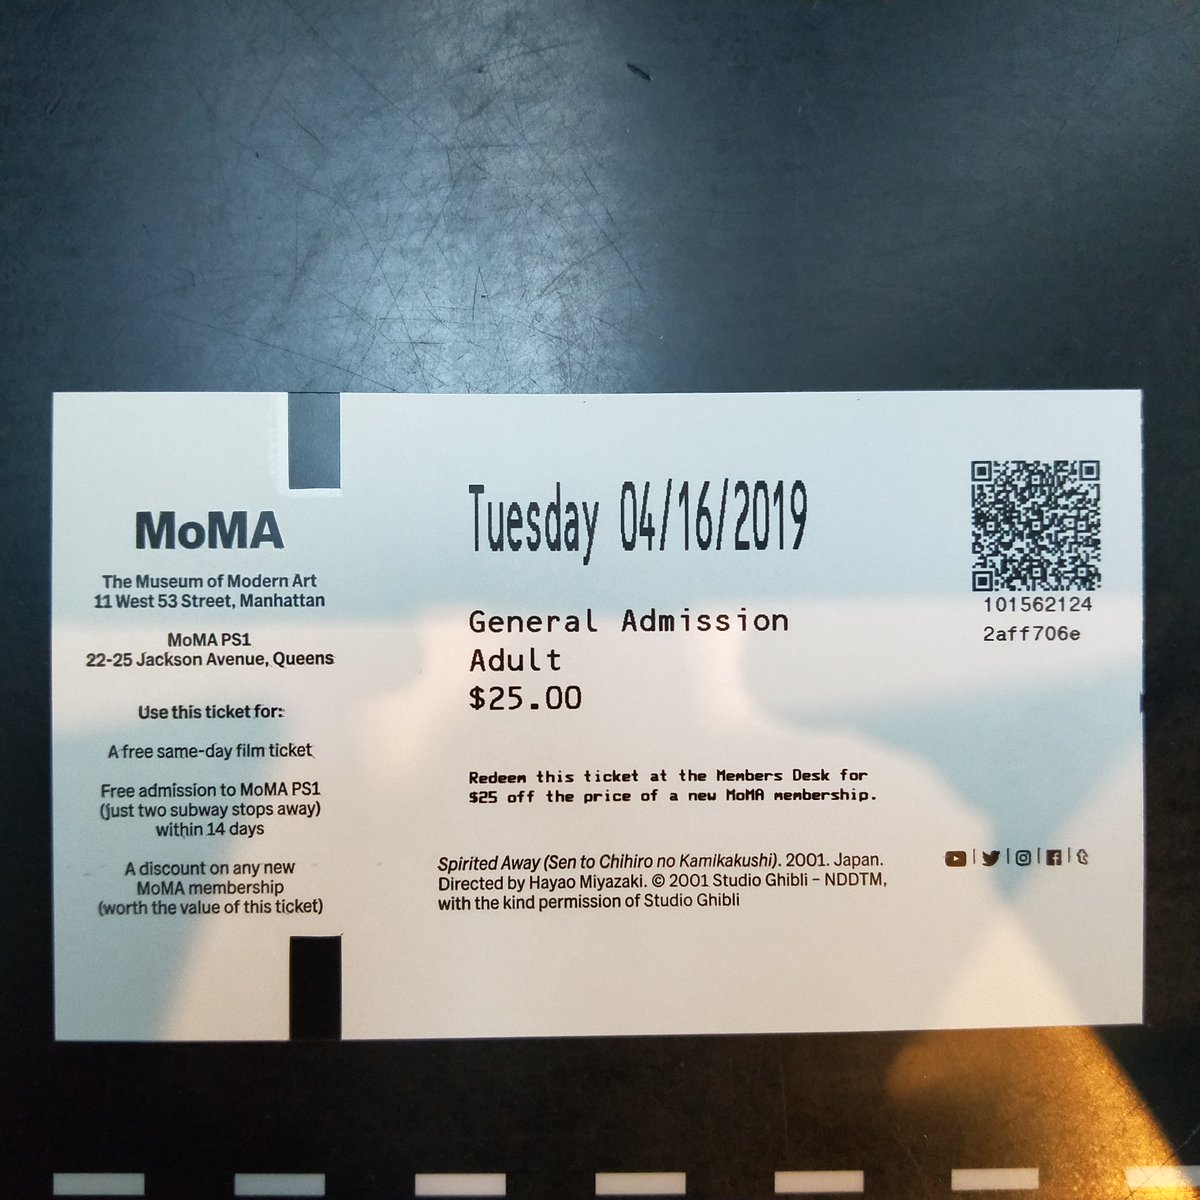 Yoshimura on Twitter: "久しぶりにニューヨーク近代美術館（MOMA）へ行ったら、入場券の裏側が「千と千尋の神隠し」だった件。 https://t.co/nFhdktixi0" Twitter